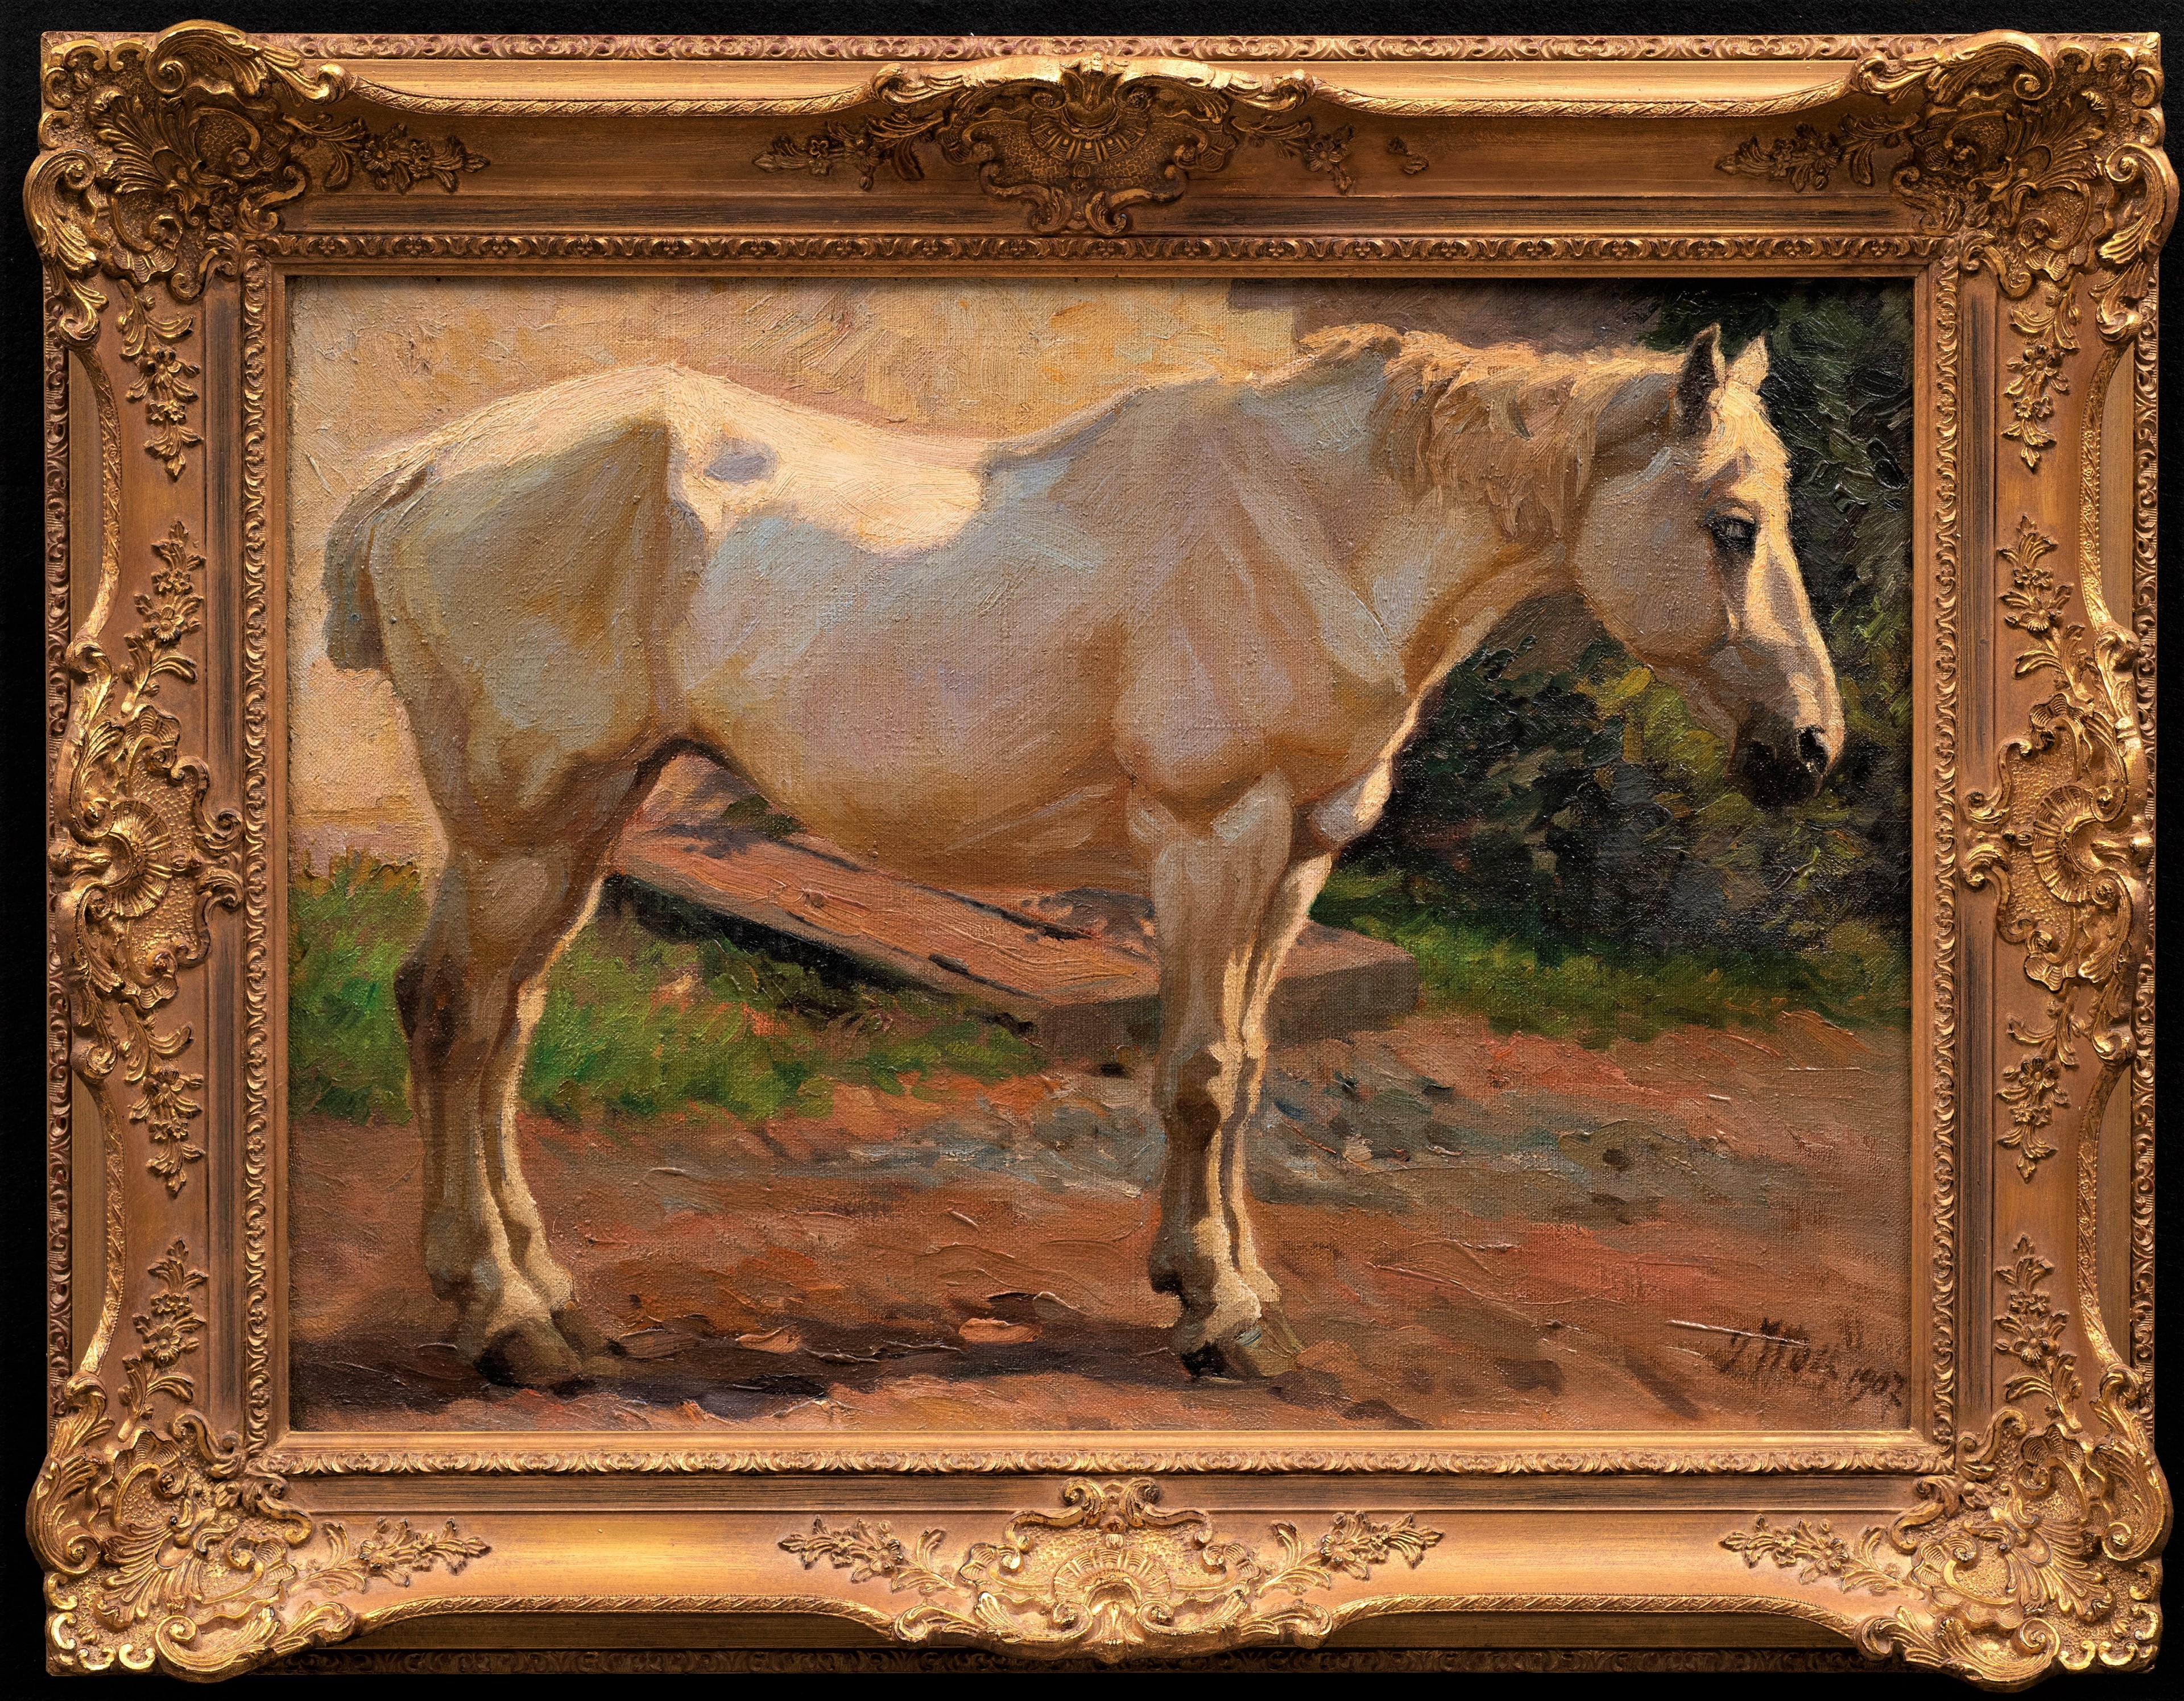 Peinture ancienne de cheval
"Cheval gris debout, face à la droite
Georg Wolf (Allemagne 1882-1962)
Huile sur toile
Signé et daté 1907 en bas à droite
27 x 19 (35 x 27 cadre) pouces

Avec sa queue courte pour ne pas s'emmêler, il est évident que ce